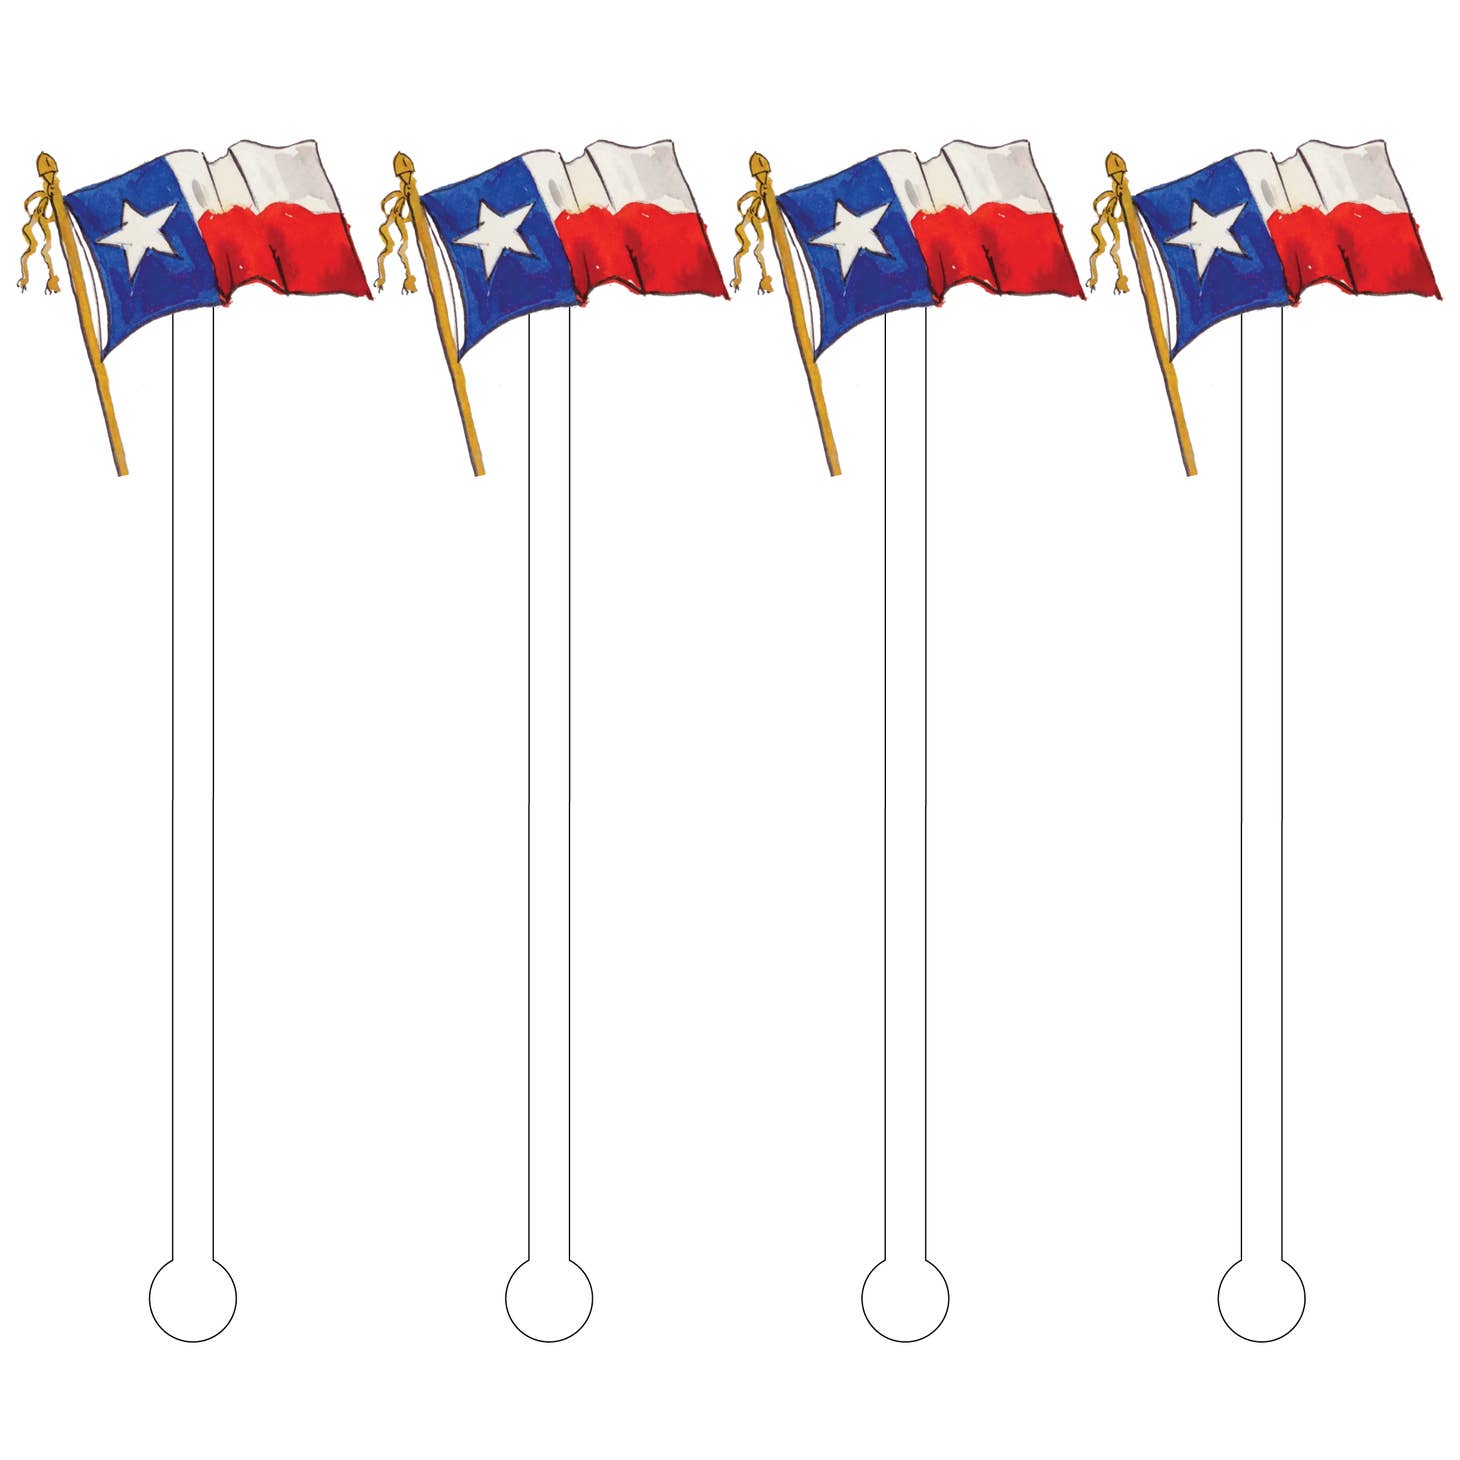 Texas Flag Acrylic Sticks